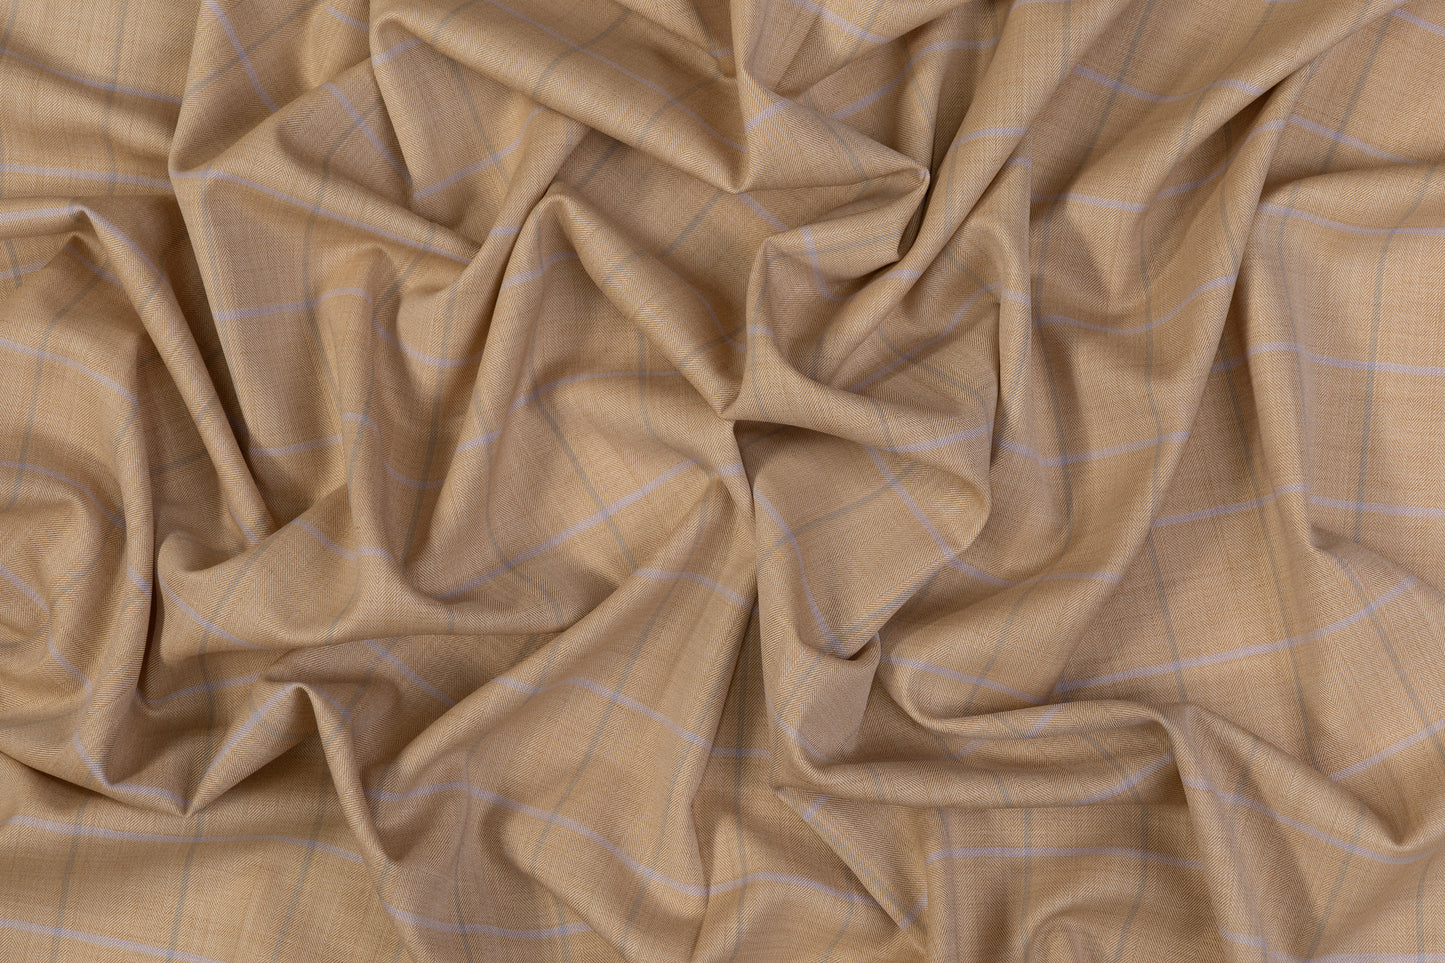 Ermenegildo Zegna - Super Fine Australian Wool and Silk Suiting - Tan